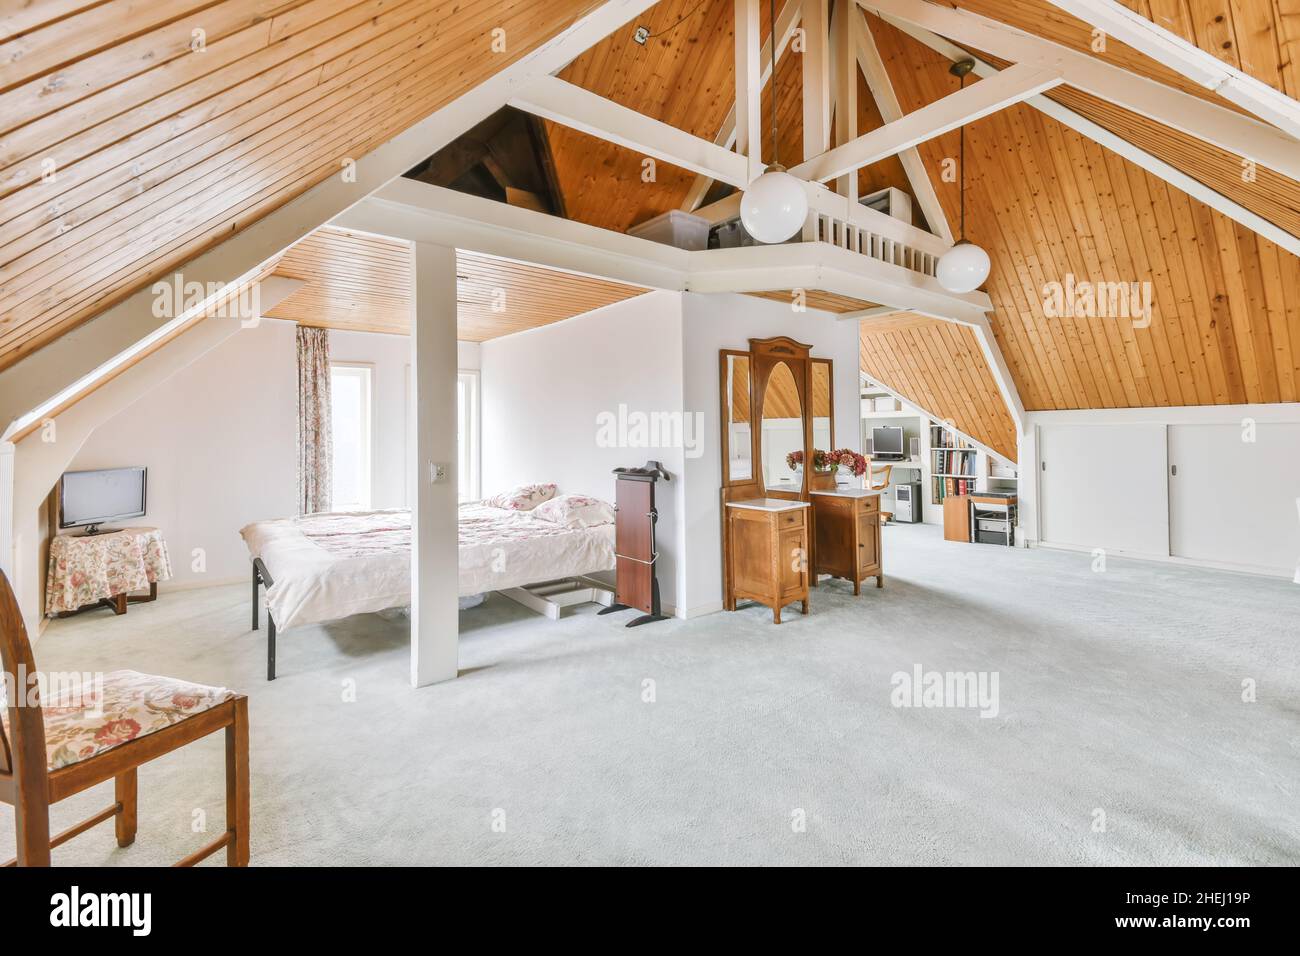 Gemütlich eingerichtetes Dachgeschoss mit einer hohen Holzdecke und  hellgrauem Teppich Stockfotografie - Alamy